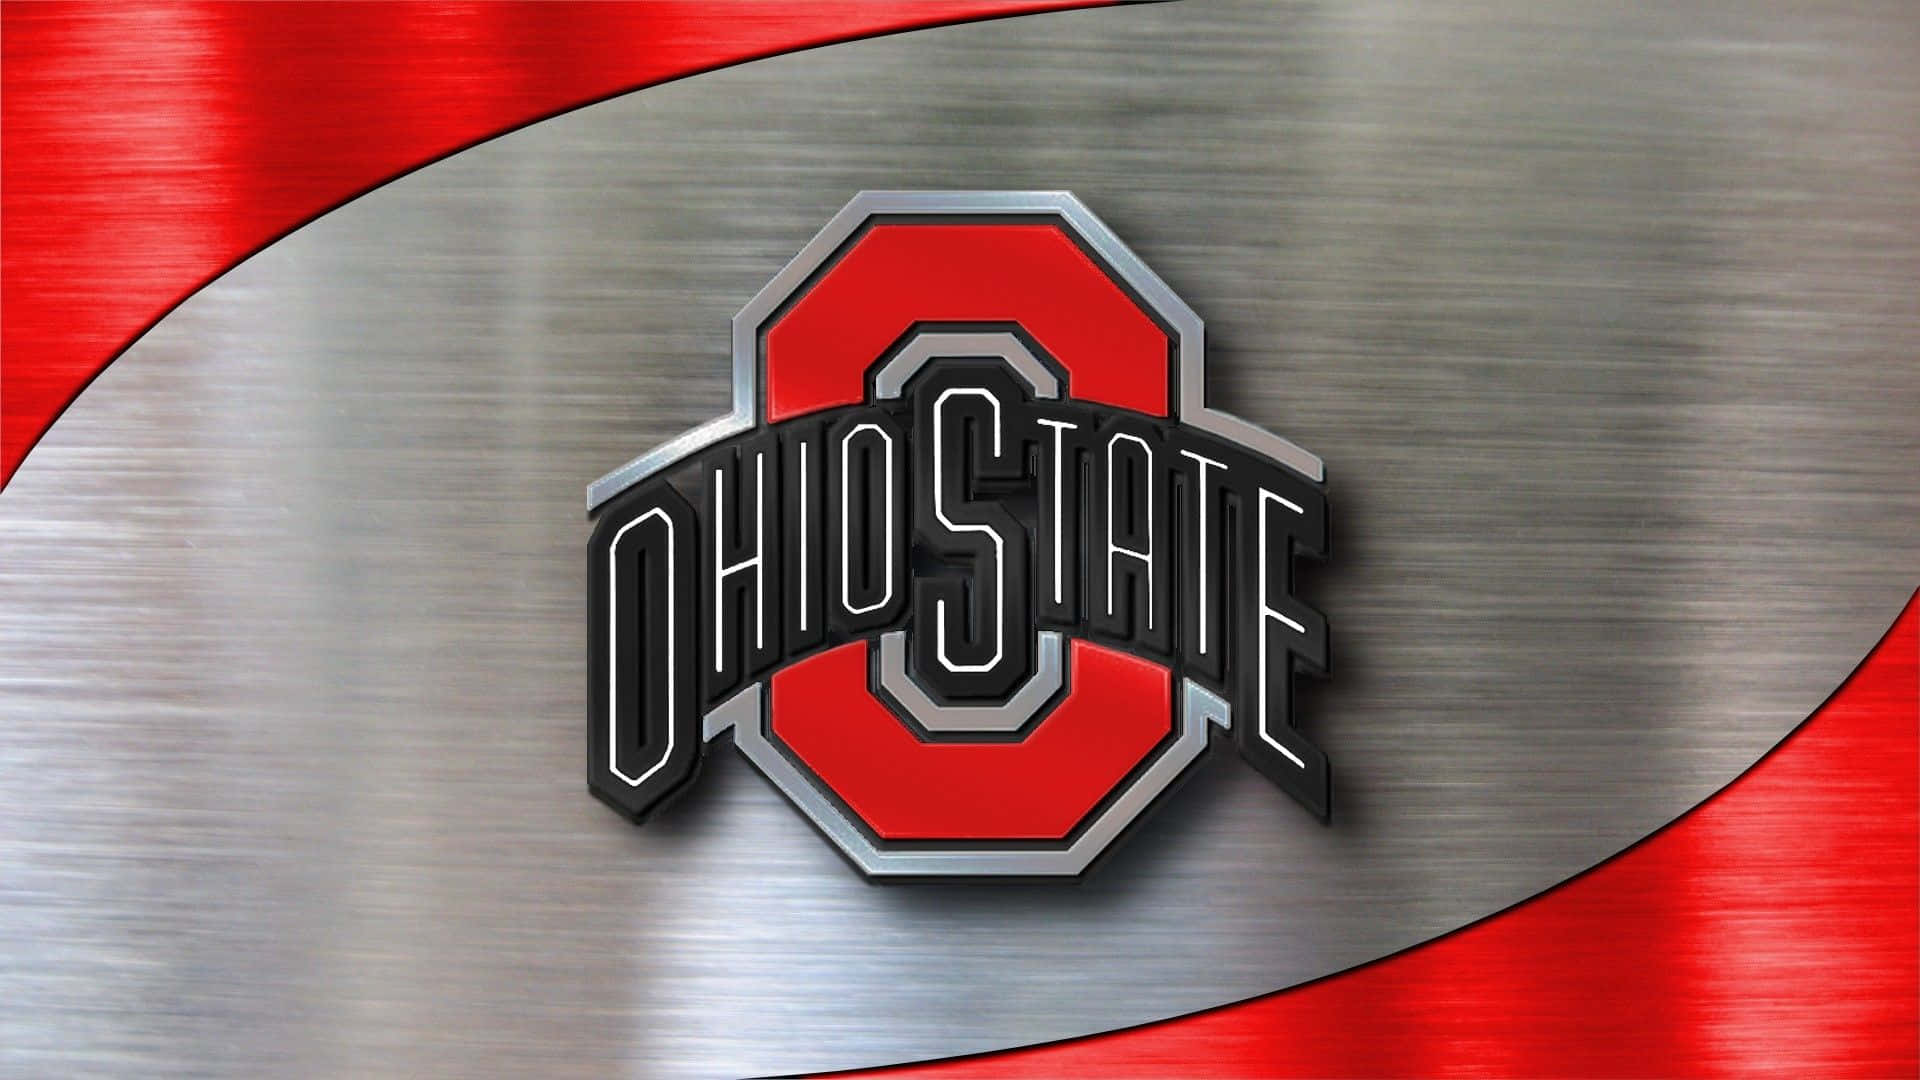 Logotipode Ohio State En Un Fondo De Metal Fondo de pantalla